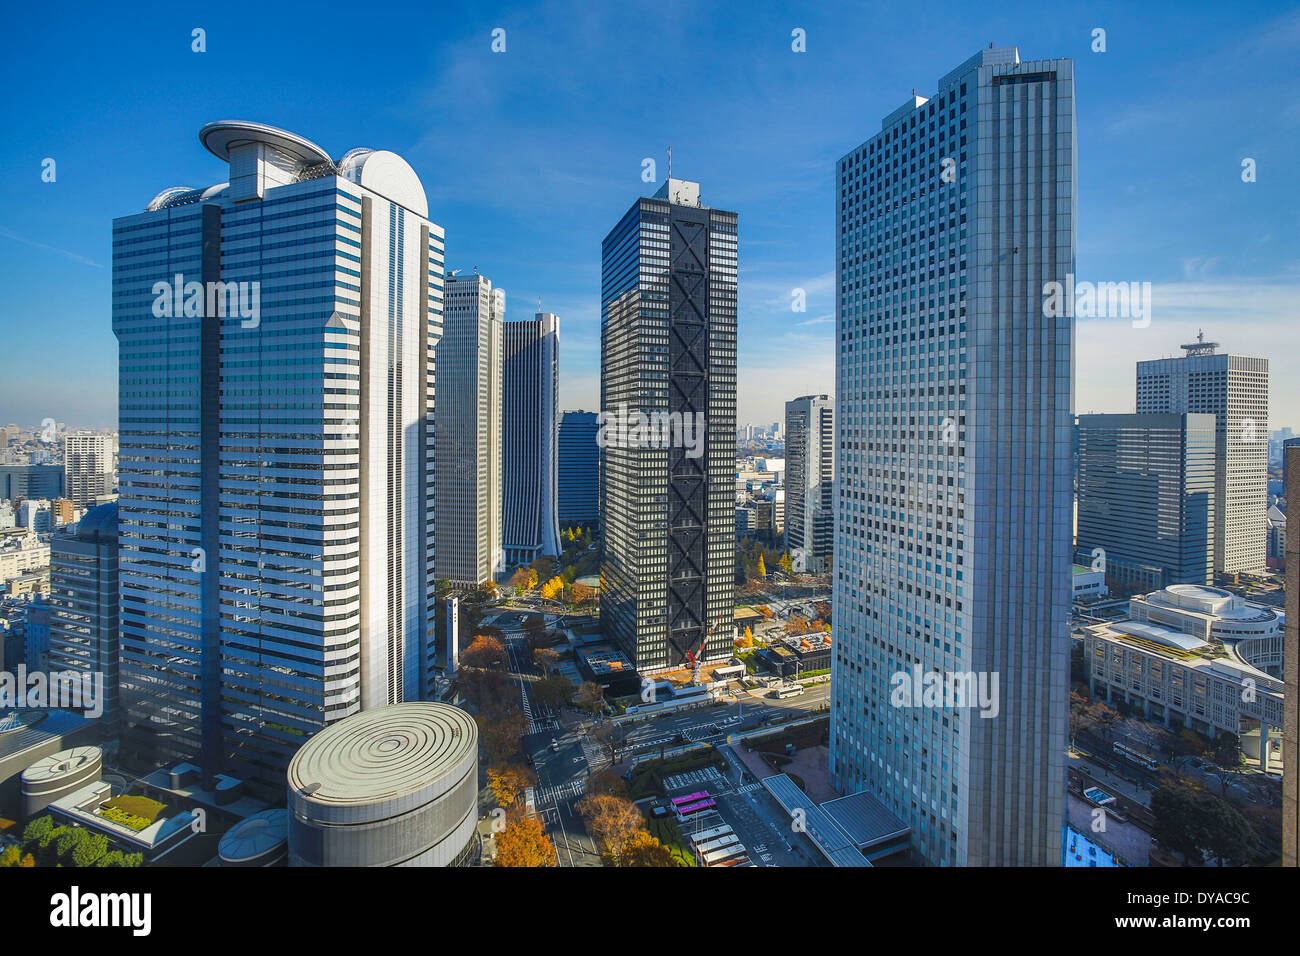 Le Japon, l'Asie, Tokyo, entreprise, ville, district, Shinjuku, des gratte-ciel, gare, grand, à l'ouest, urbain Banque D'Images